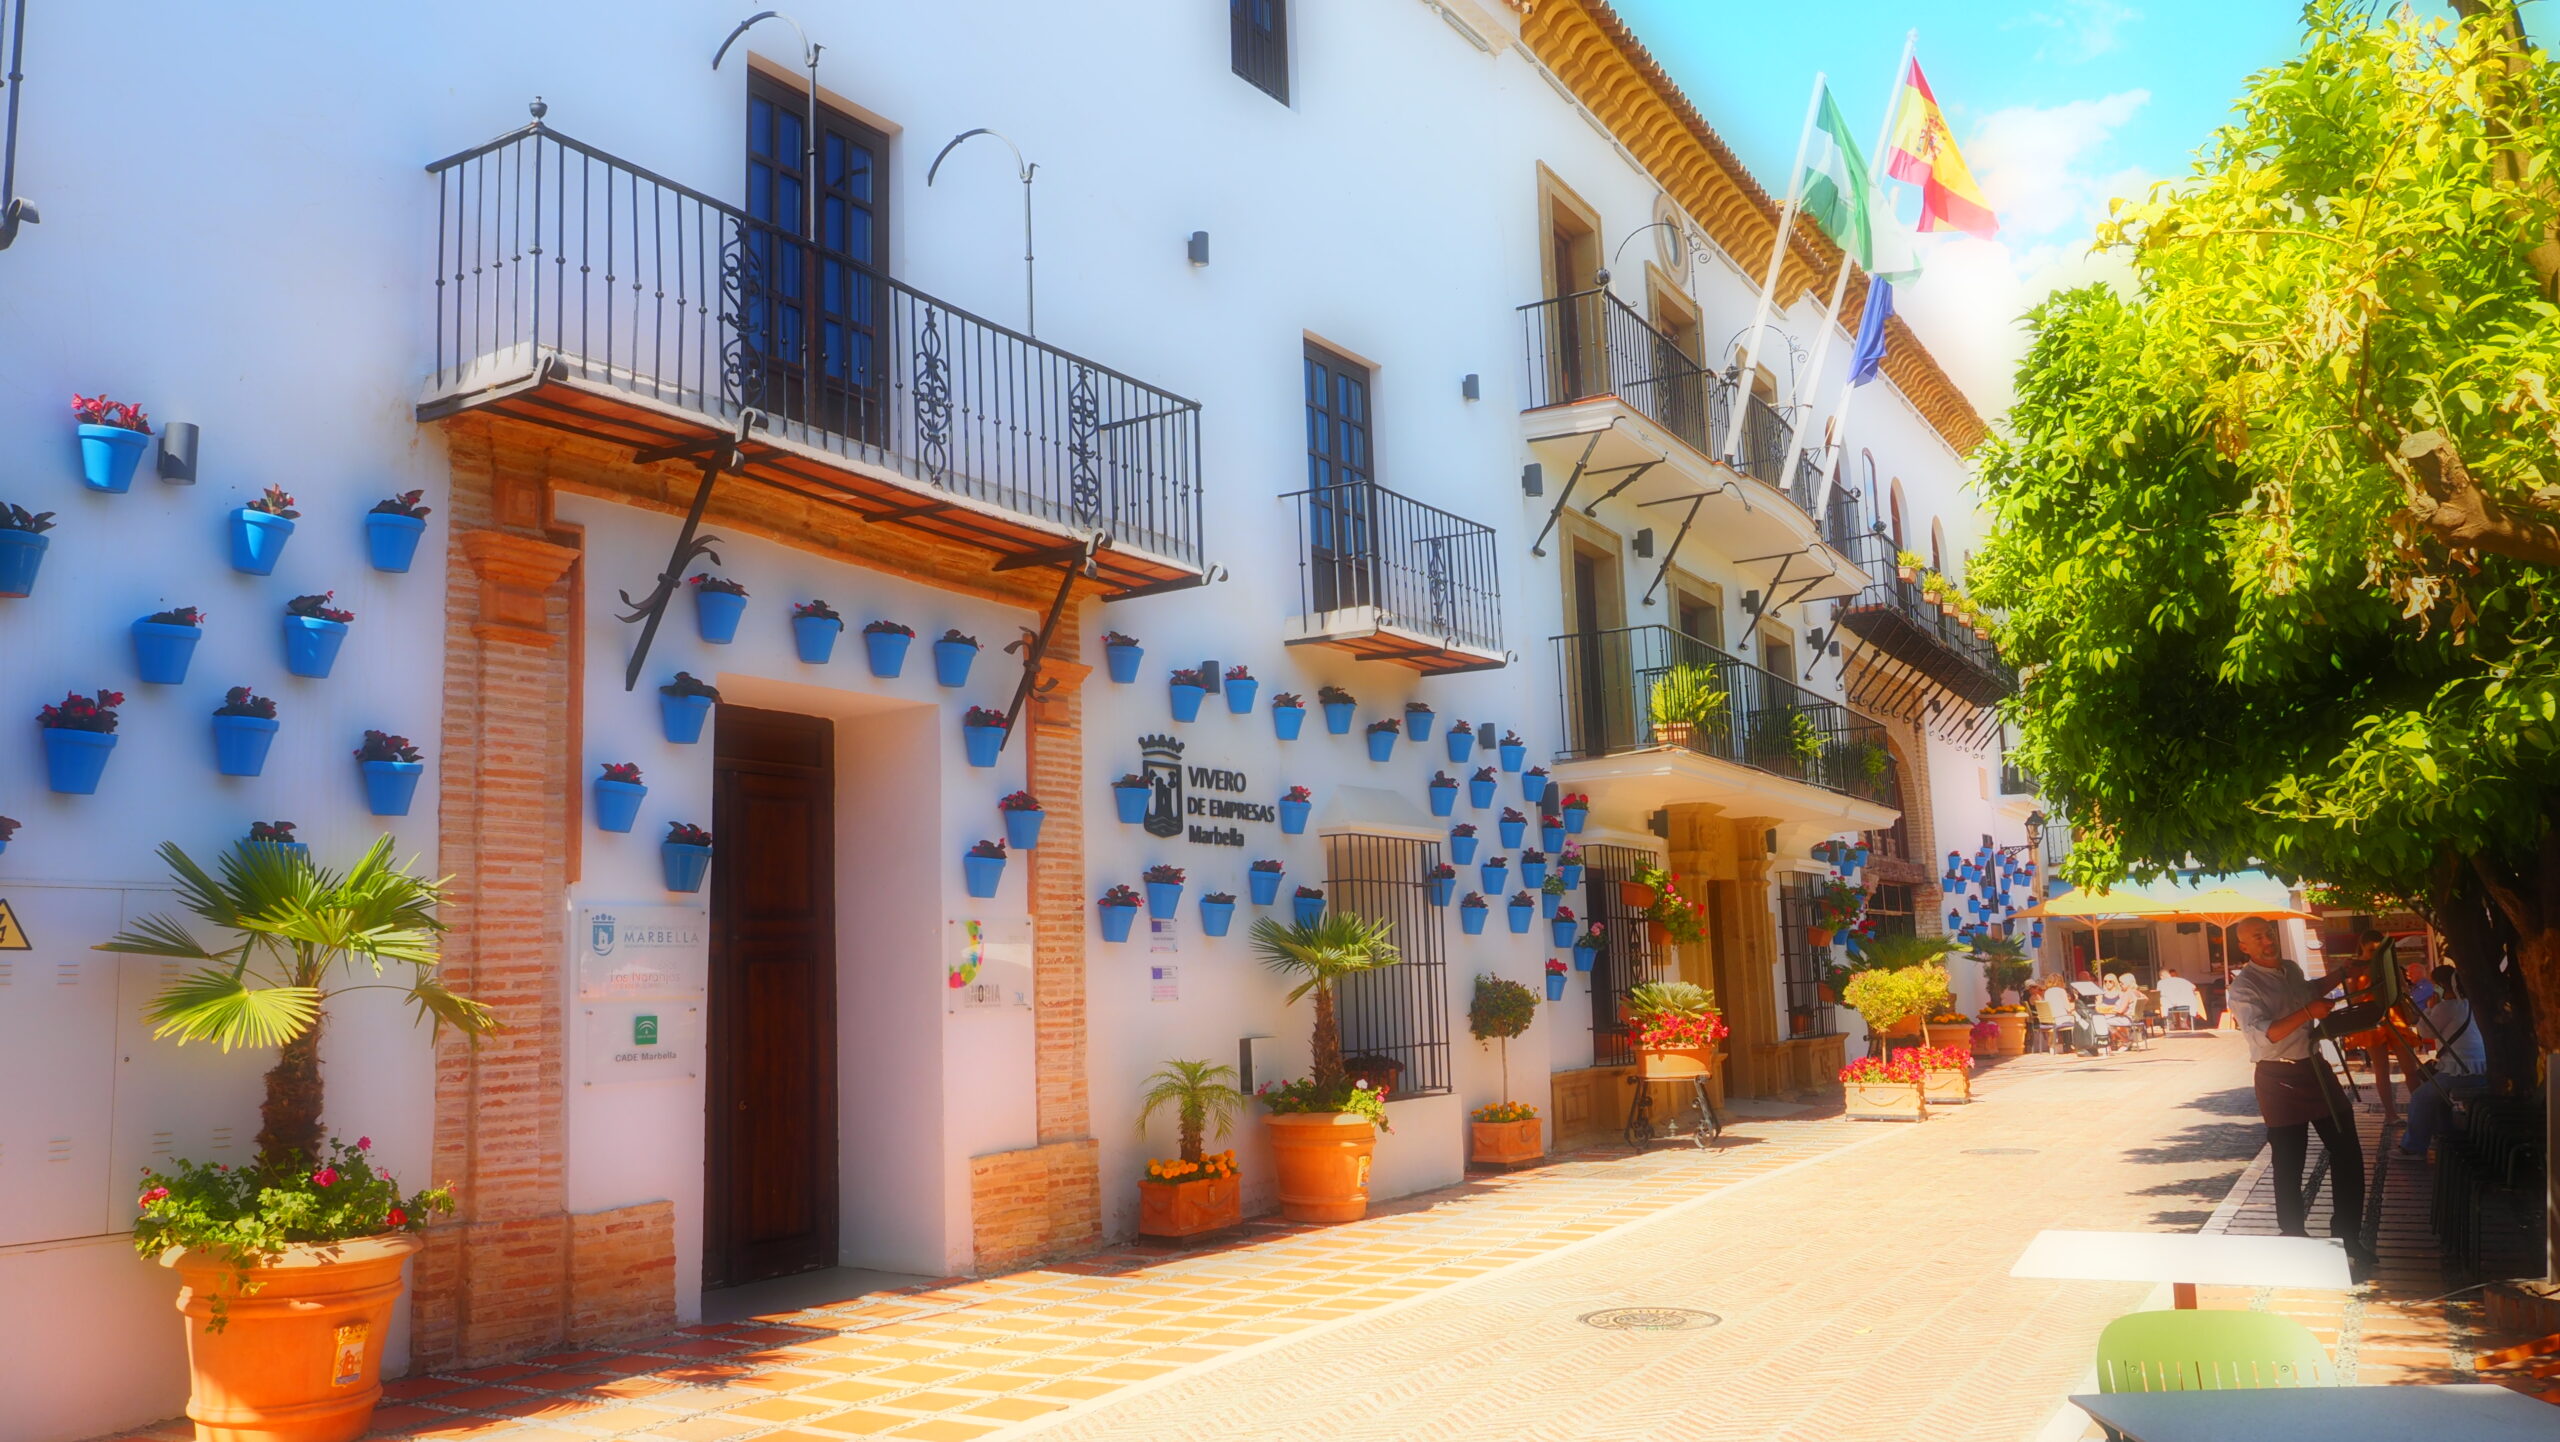 Lugares de interés, paseos y otras atracciones en Marbella.